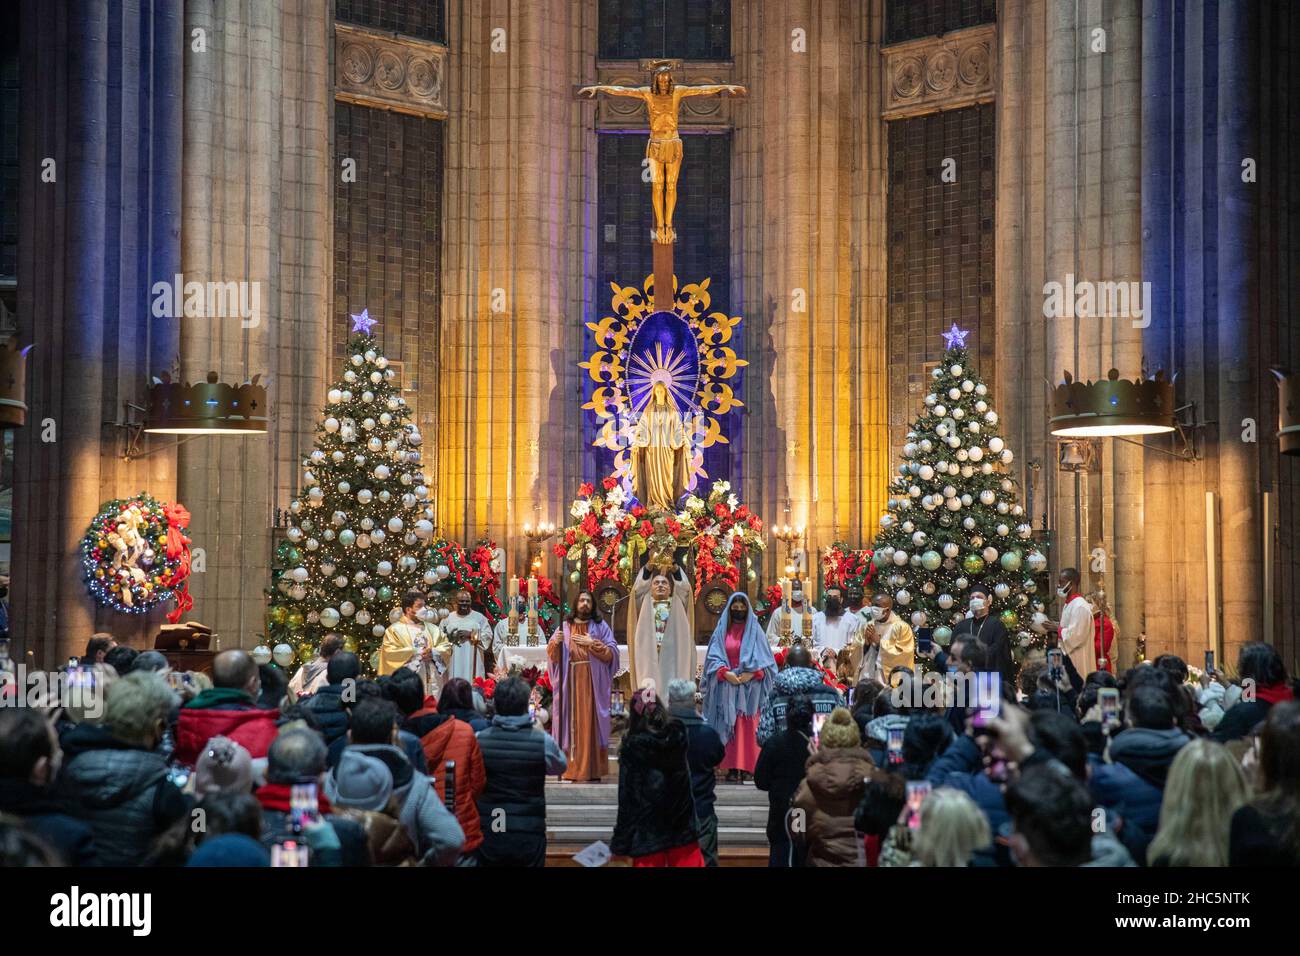 Estambul, Turquía. 24 de diciembre de 2021: Celebración de la liturgia  navideña en la Iglesia de San Antonio de Padua durante los días de la  pandemia. La Navidad es la fiesta cristiana